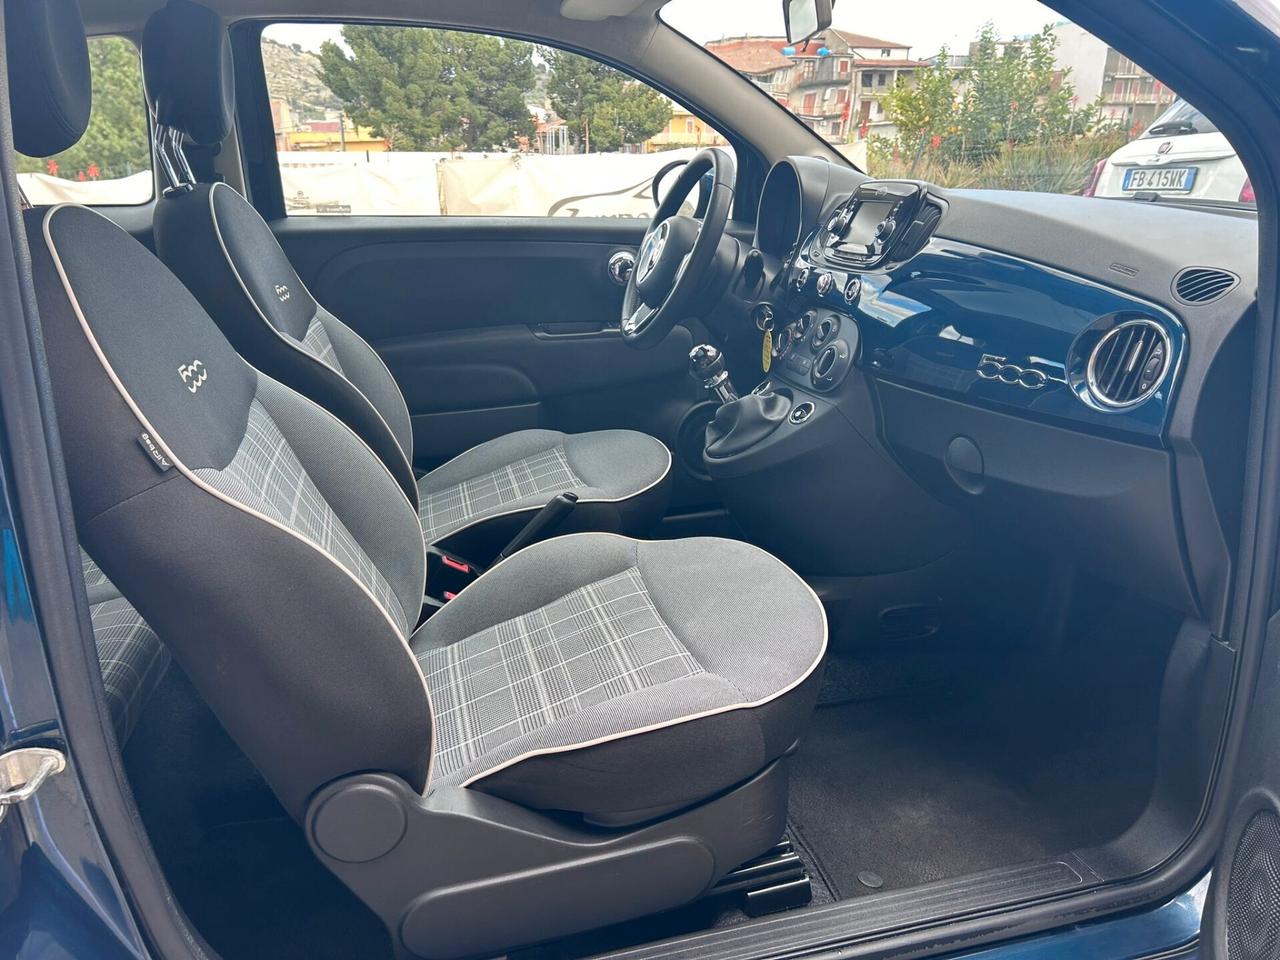 Fiat 500 1.2 Lounge 69cv - 2018 Neopatentati